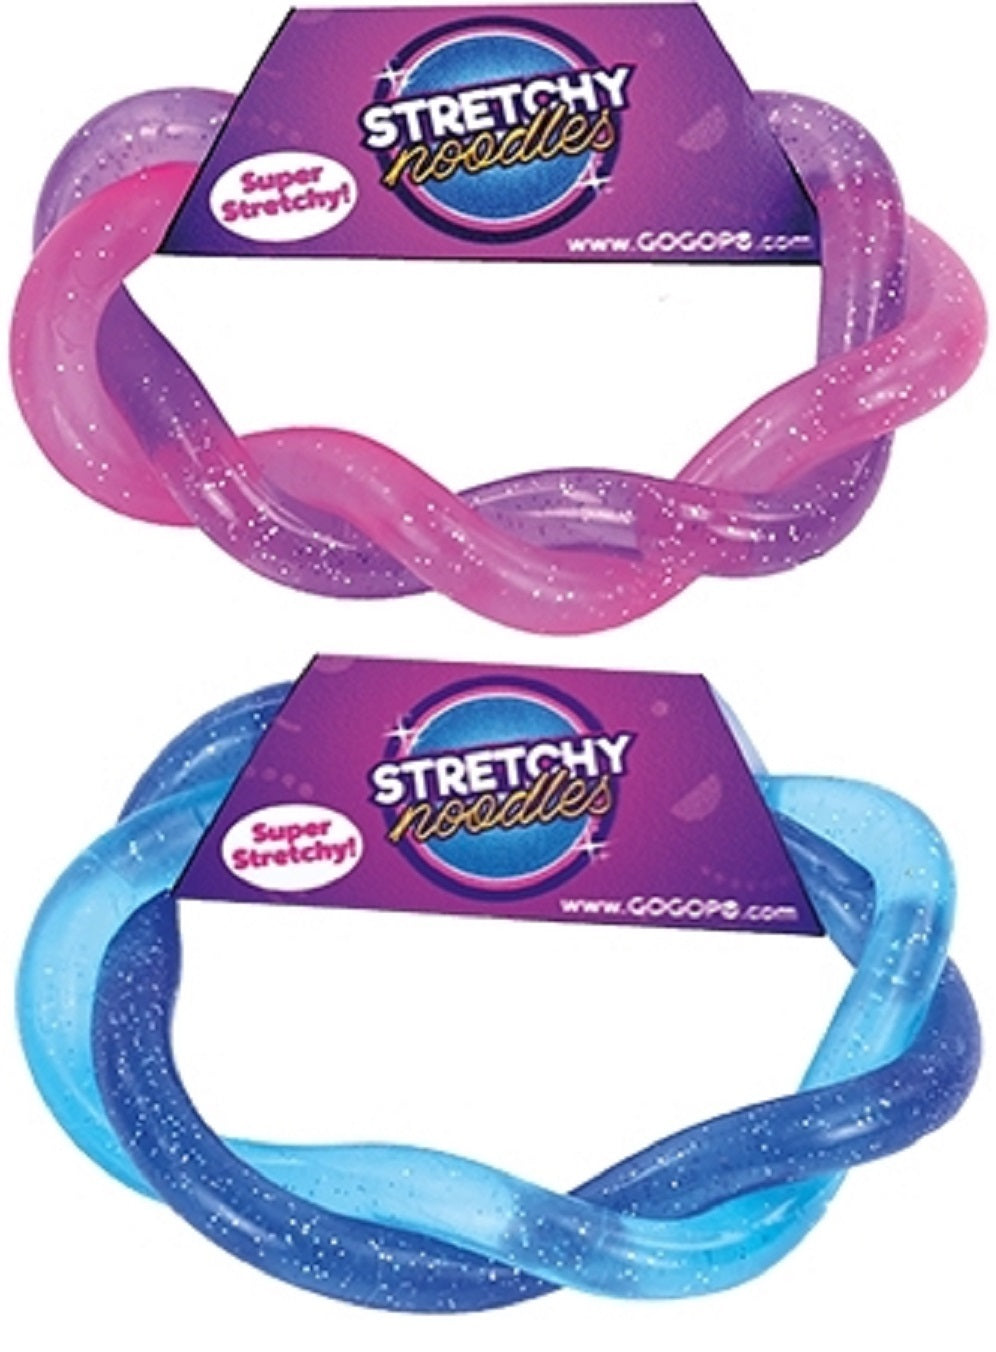 Stretchy Glitter Noodles Sensory Toy